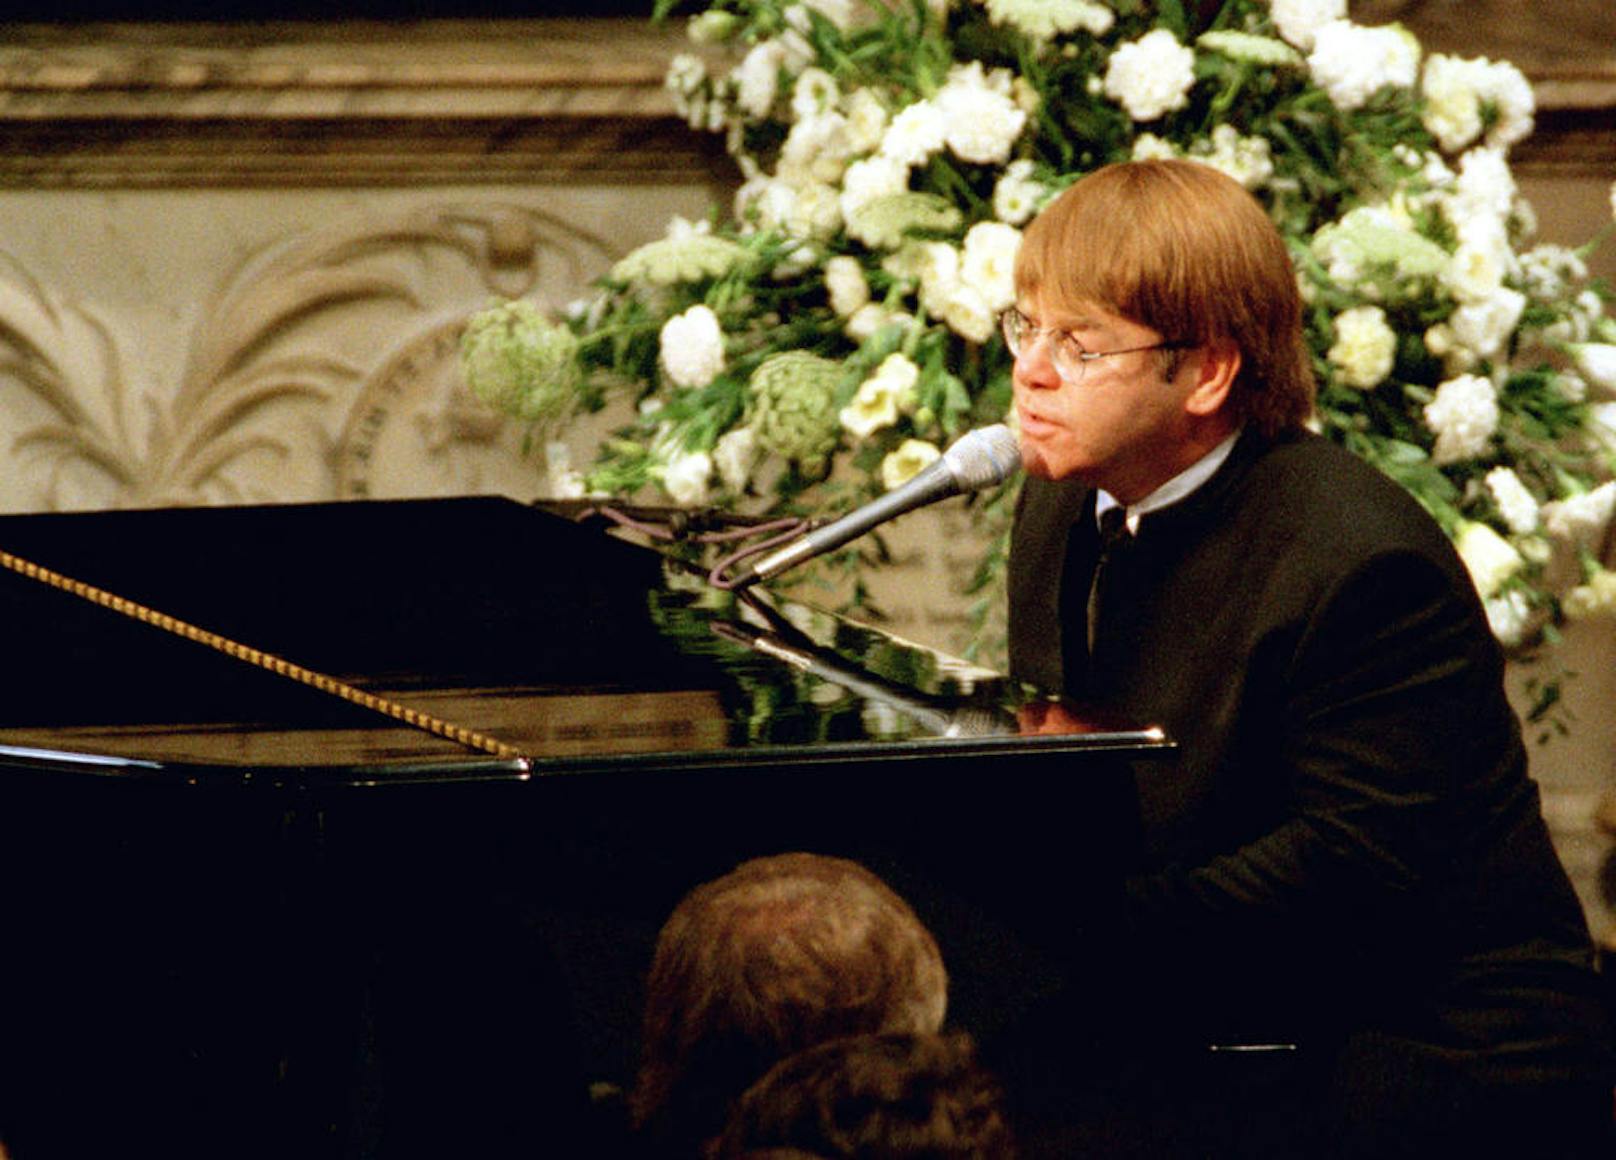 Beim Begräbnis von Prinzessin Diana sang Elton John in der Kirche eine Neuinterpretation seines Hits "Candle in the Wind". Es wurde die meistverkaufte Single aller Zeiten. Elton spendete die Einnahmen.